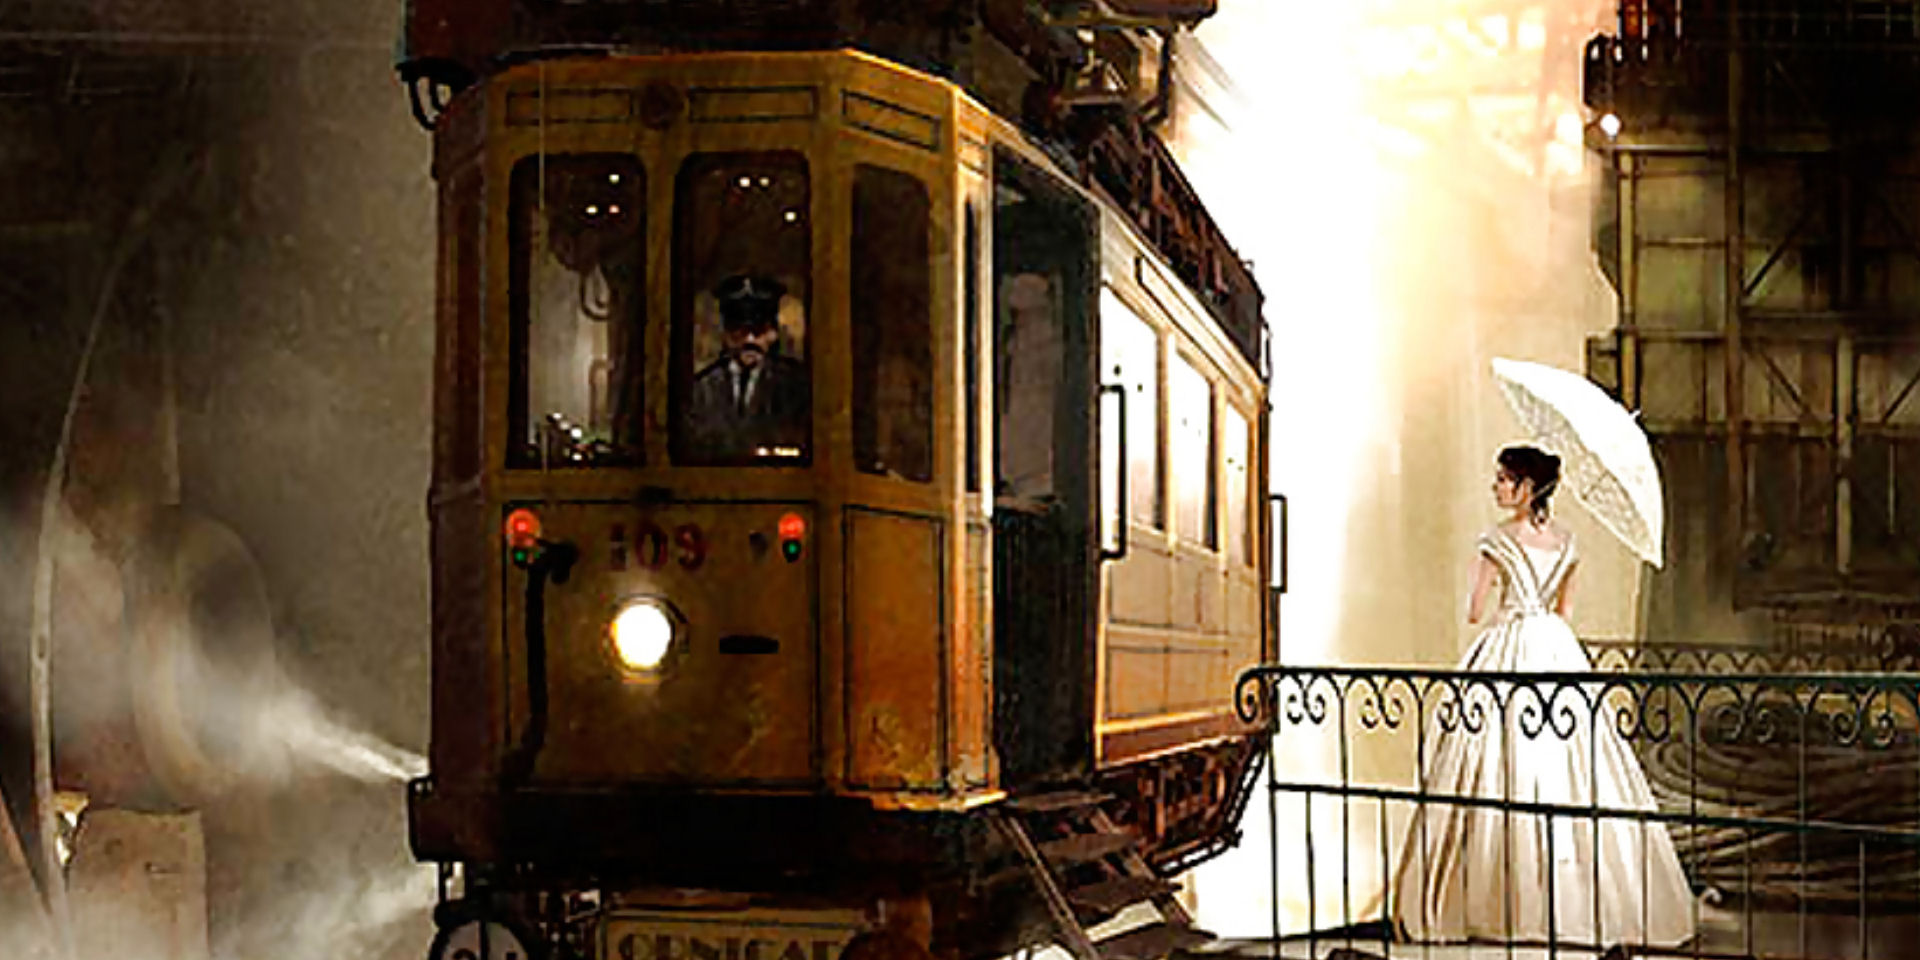 Raduno steampunk sul tram storico